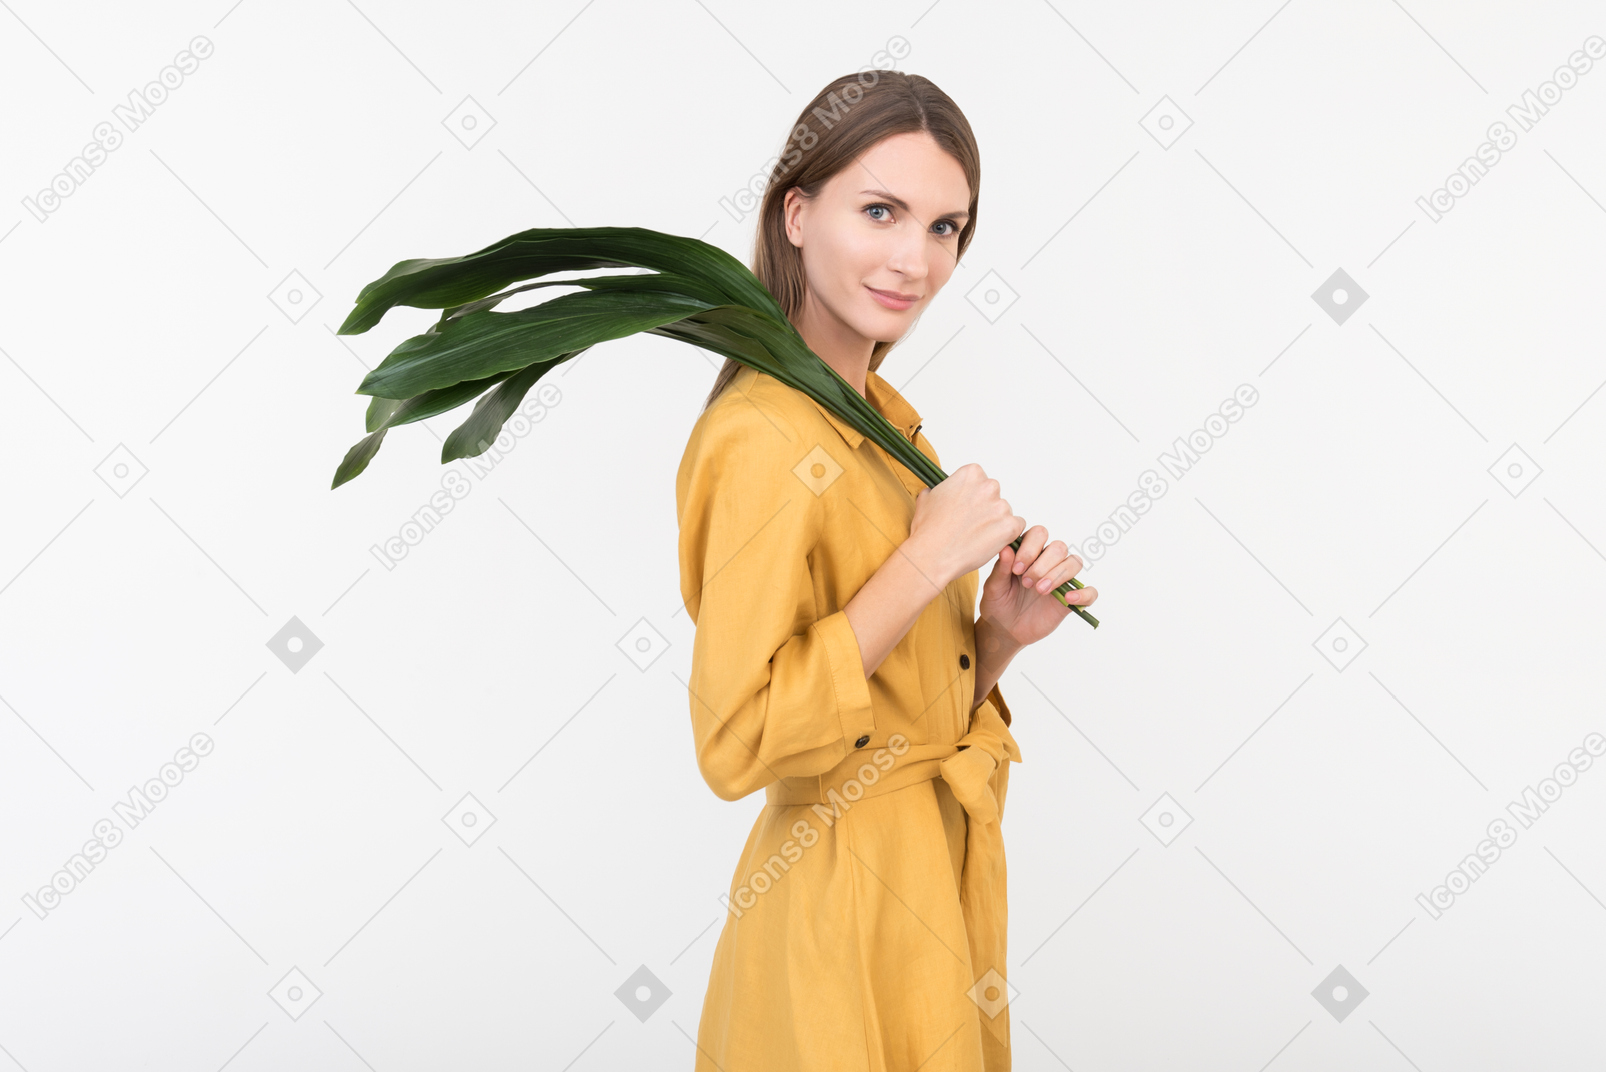 Jovem de pé em perfil e segurando ramo verde no ombro dela